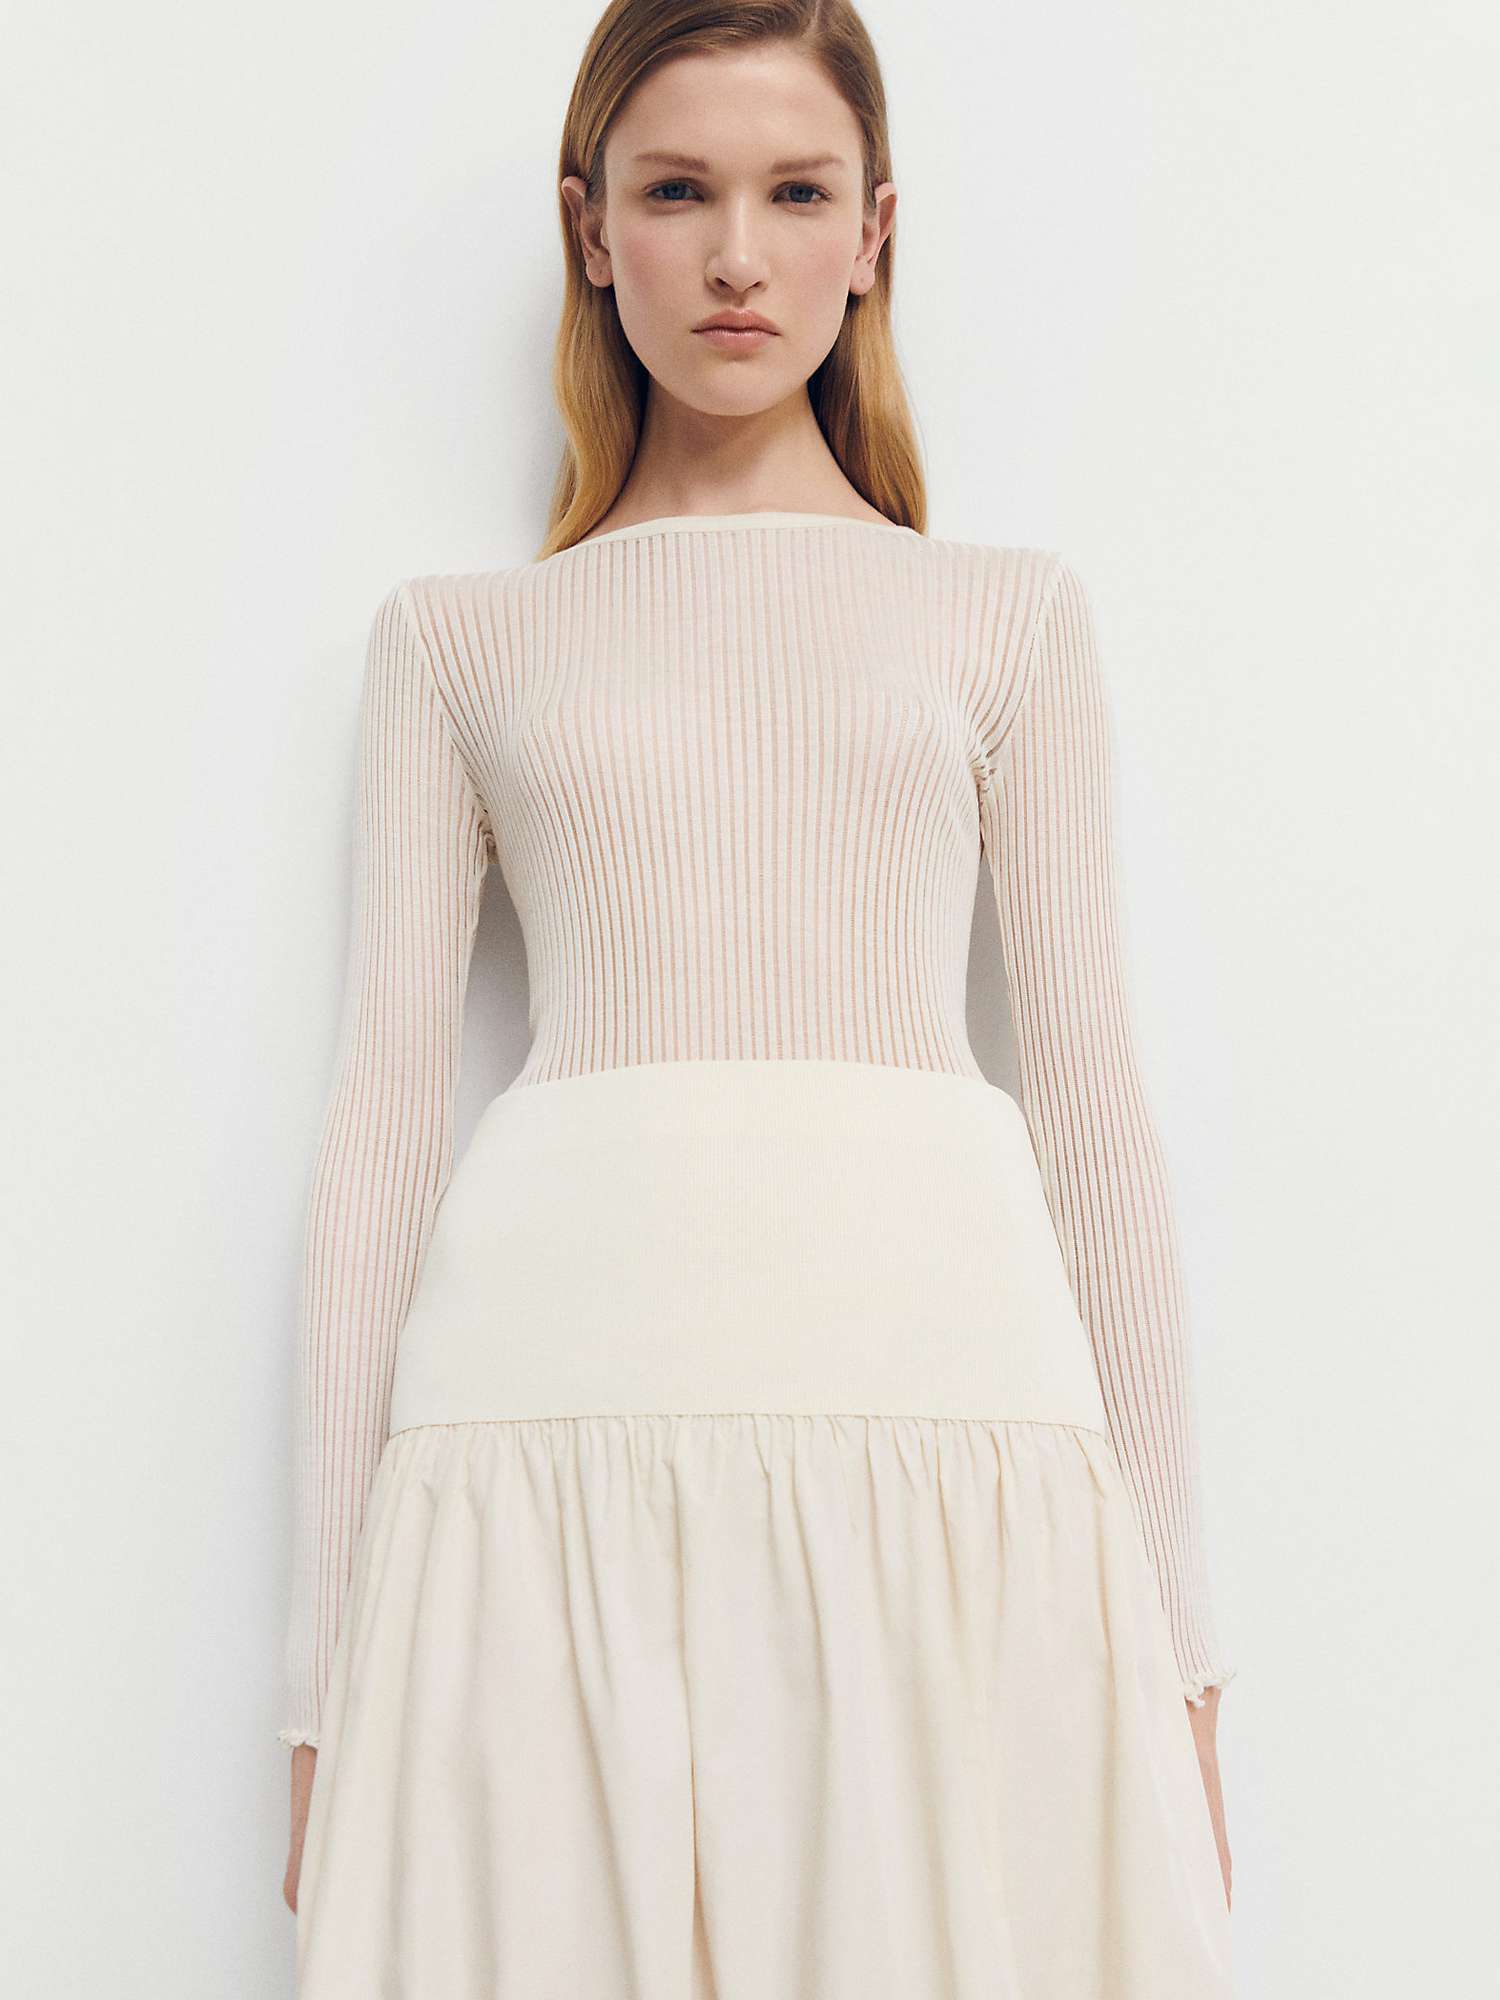 Buy Mango Andres Flared Midi Skirt, Light Beige Online at johnlewis.com